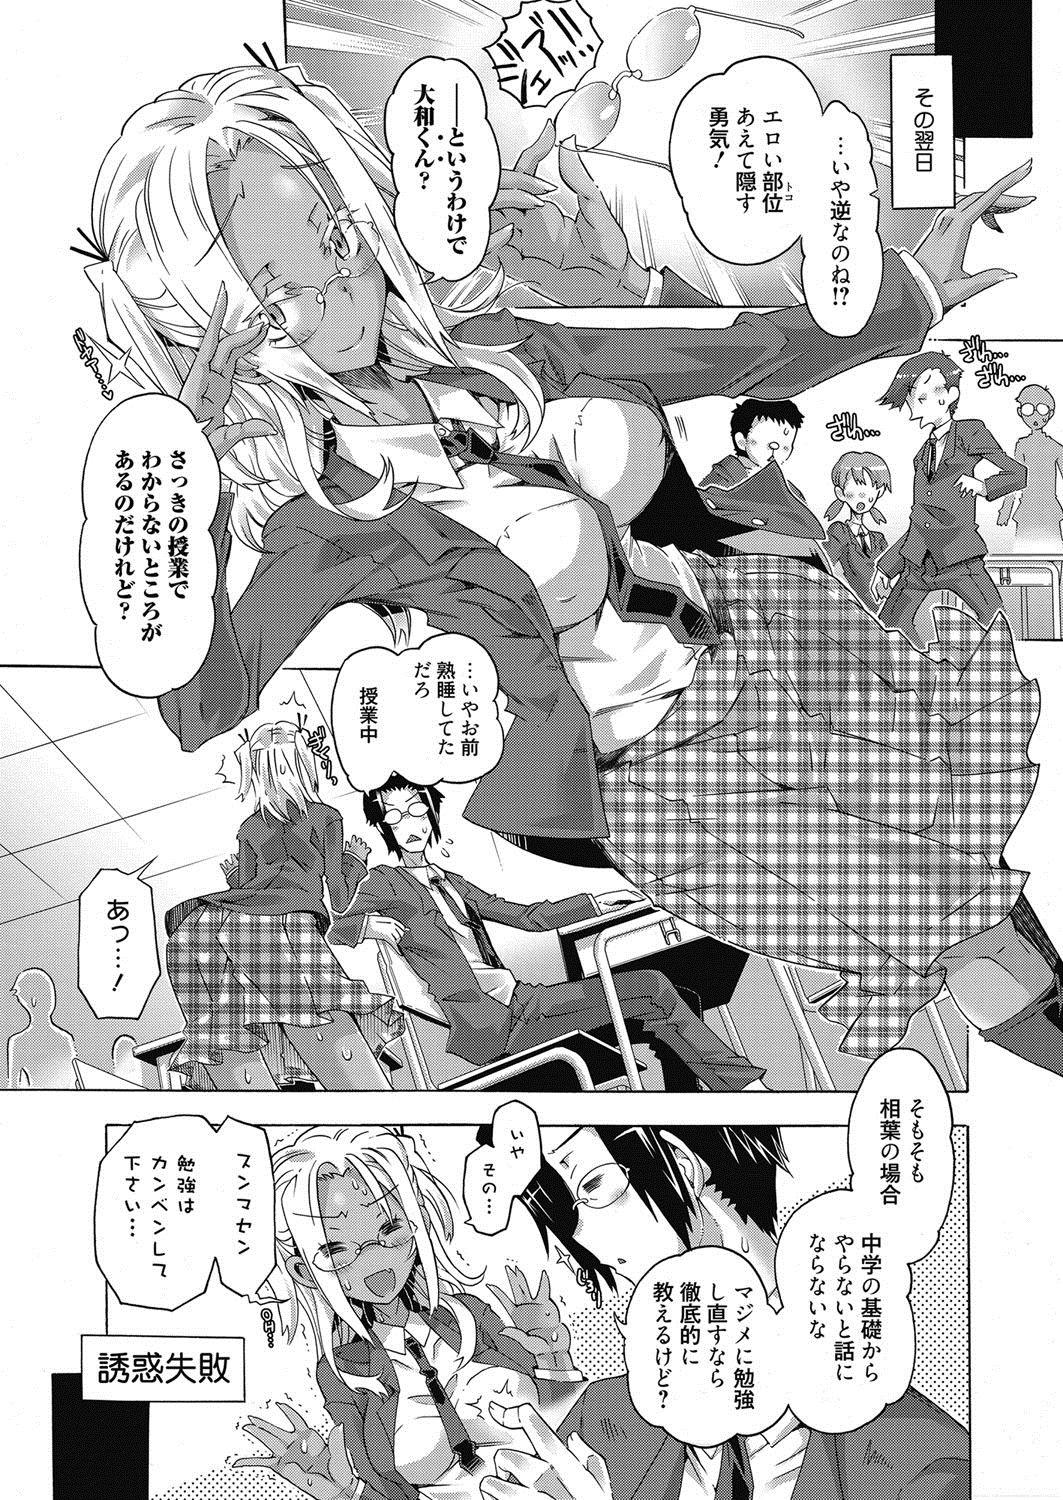 Gritona Web Manga Bangaichi Vol. 21 Tall - Page 8